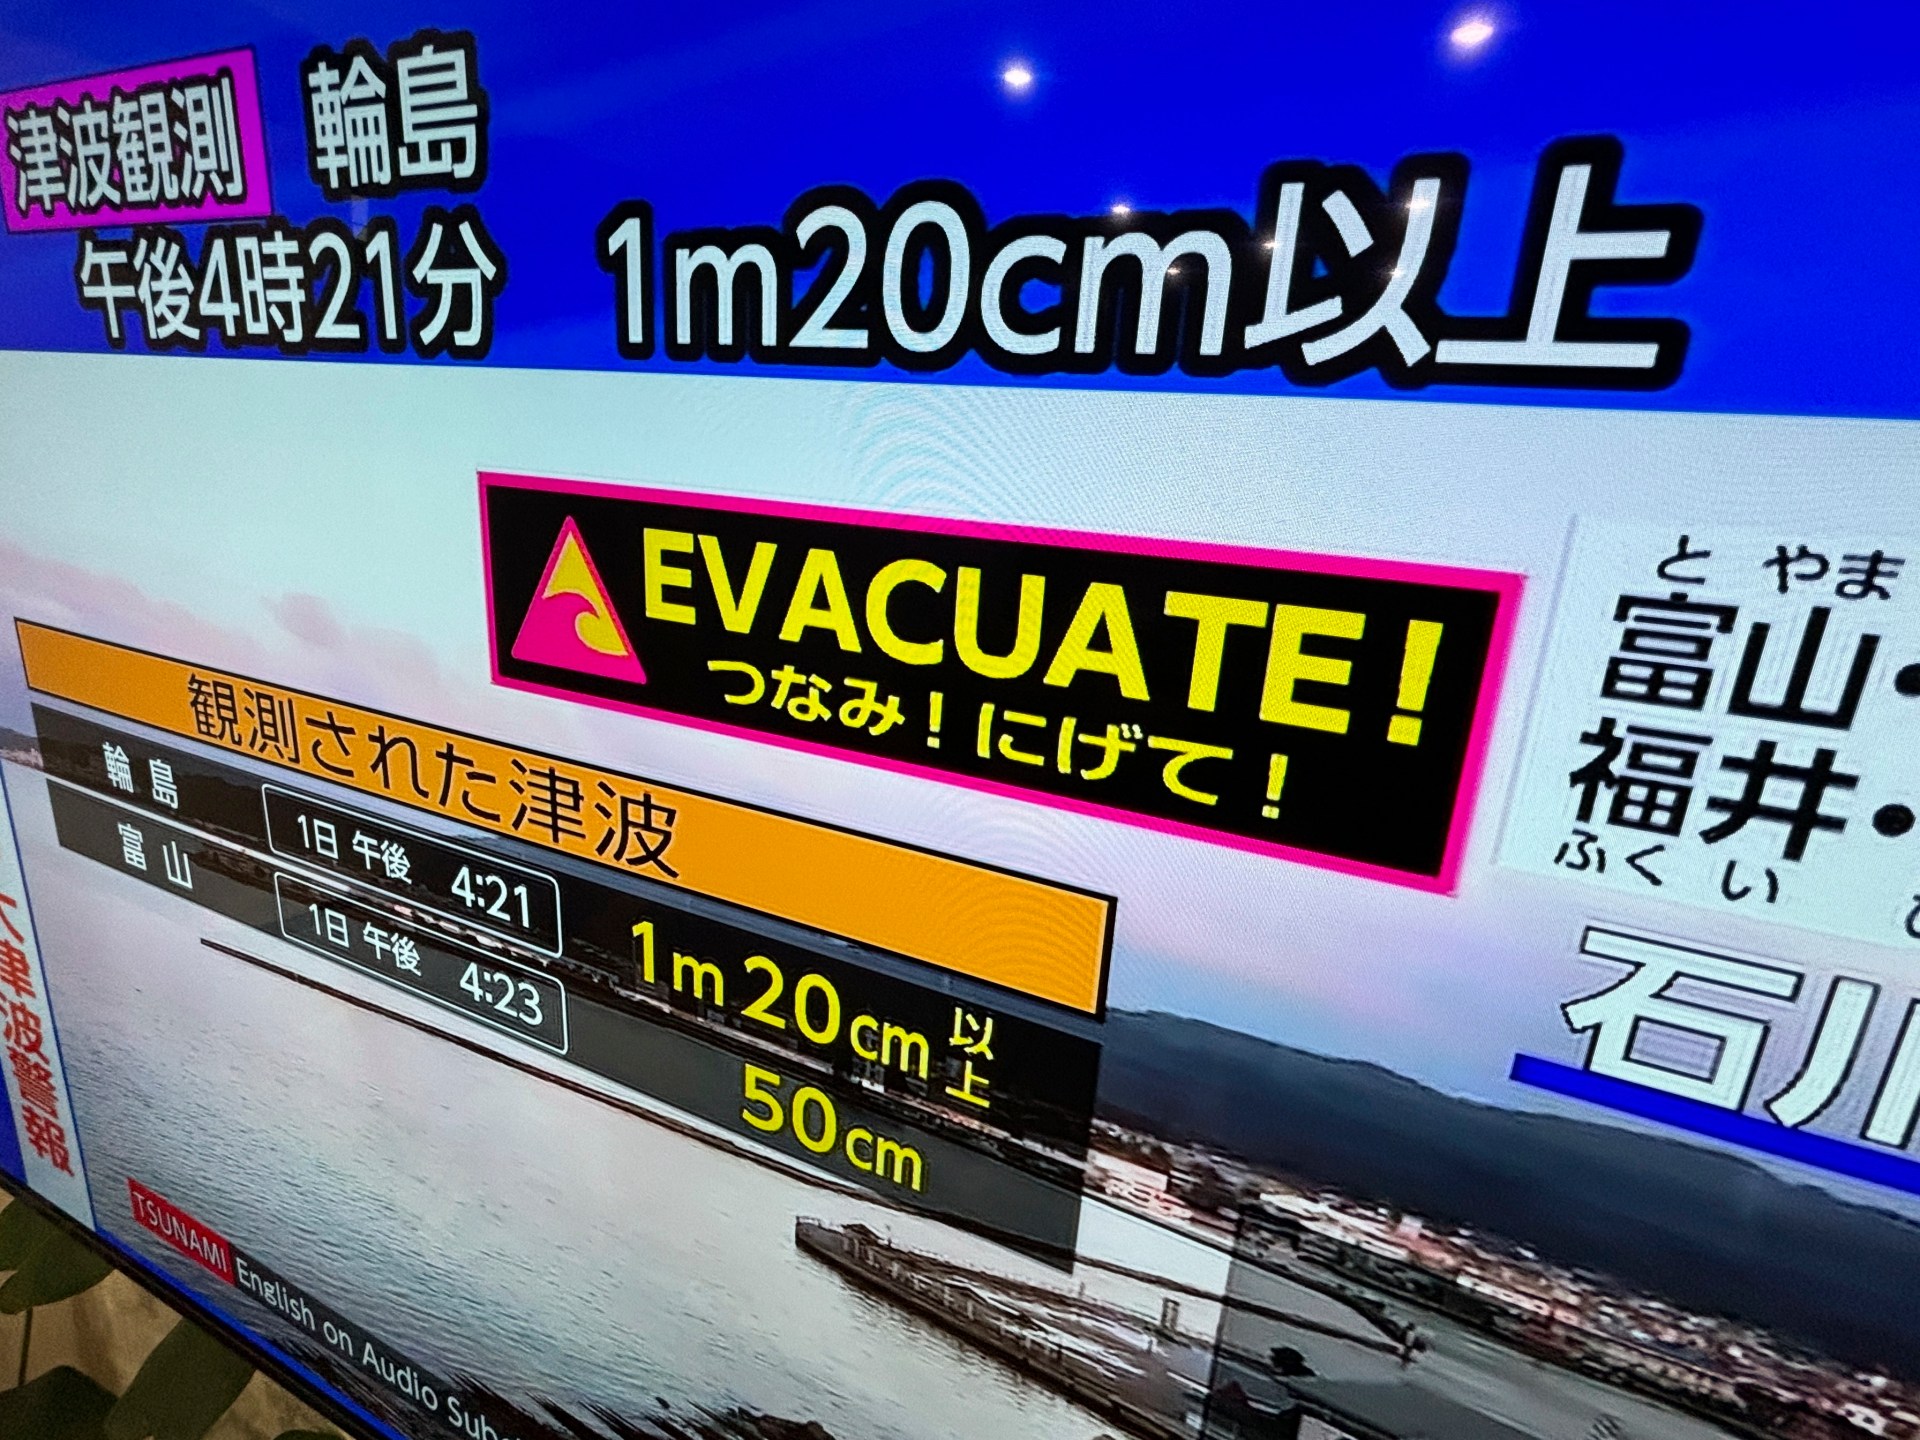 В Японии произошло землетрясение магнитудой 7,4, объявлено предупреждение о цунами.  Новости о землетрясениях